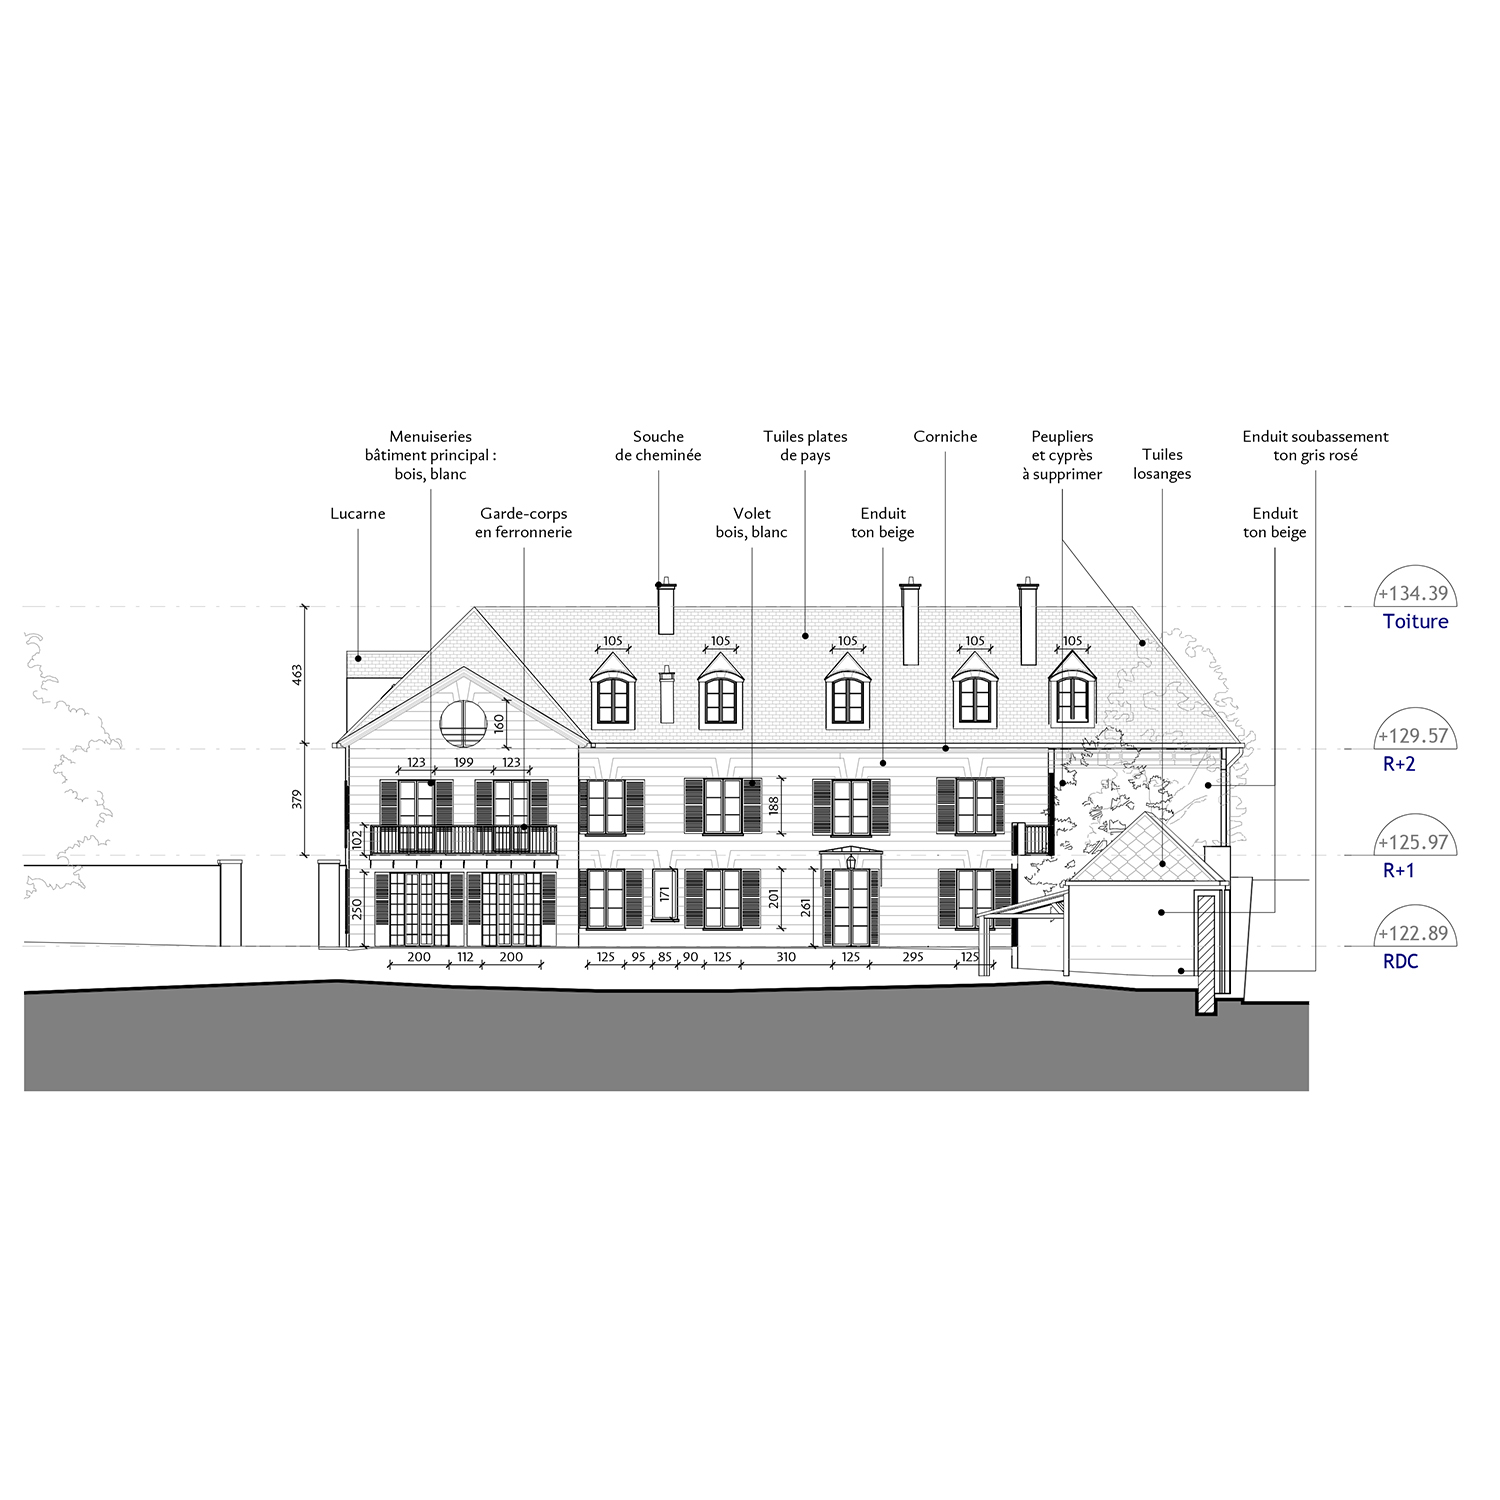 4_Avramova architecte_Louveciennes_Rhabilitation et cration de logements_Faade existante